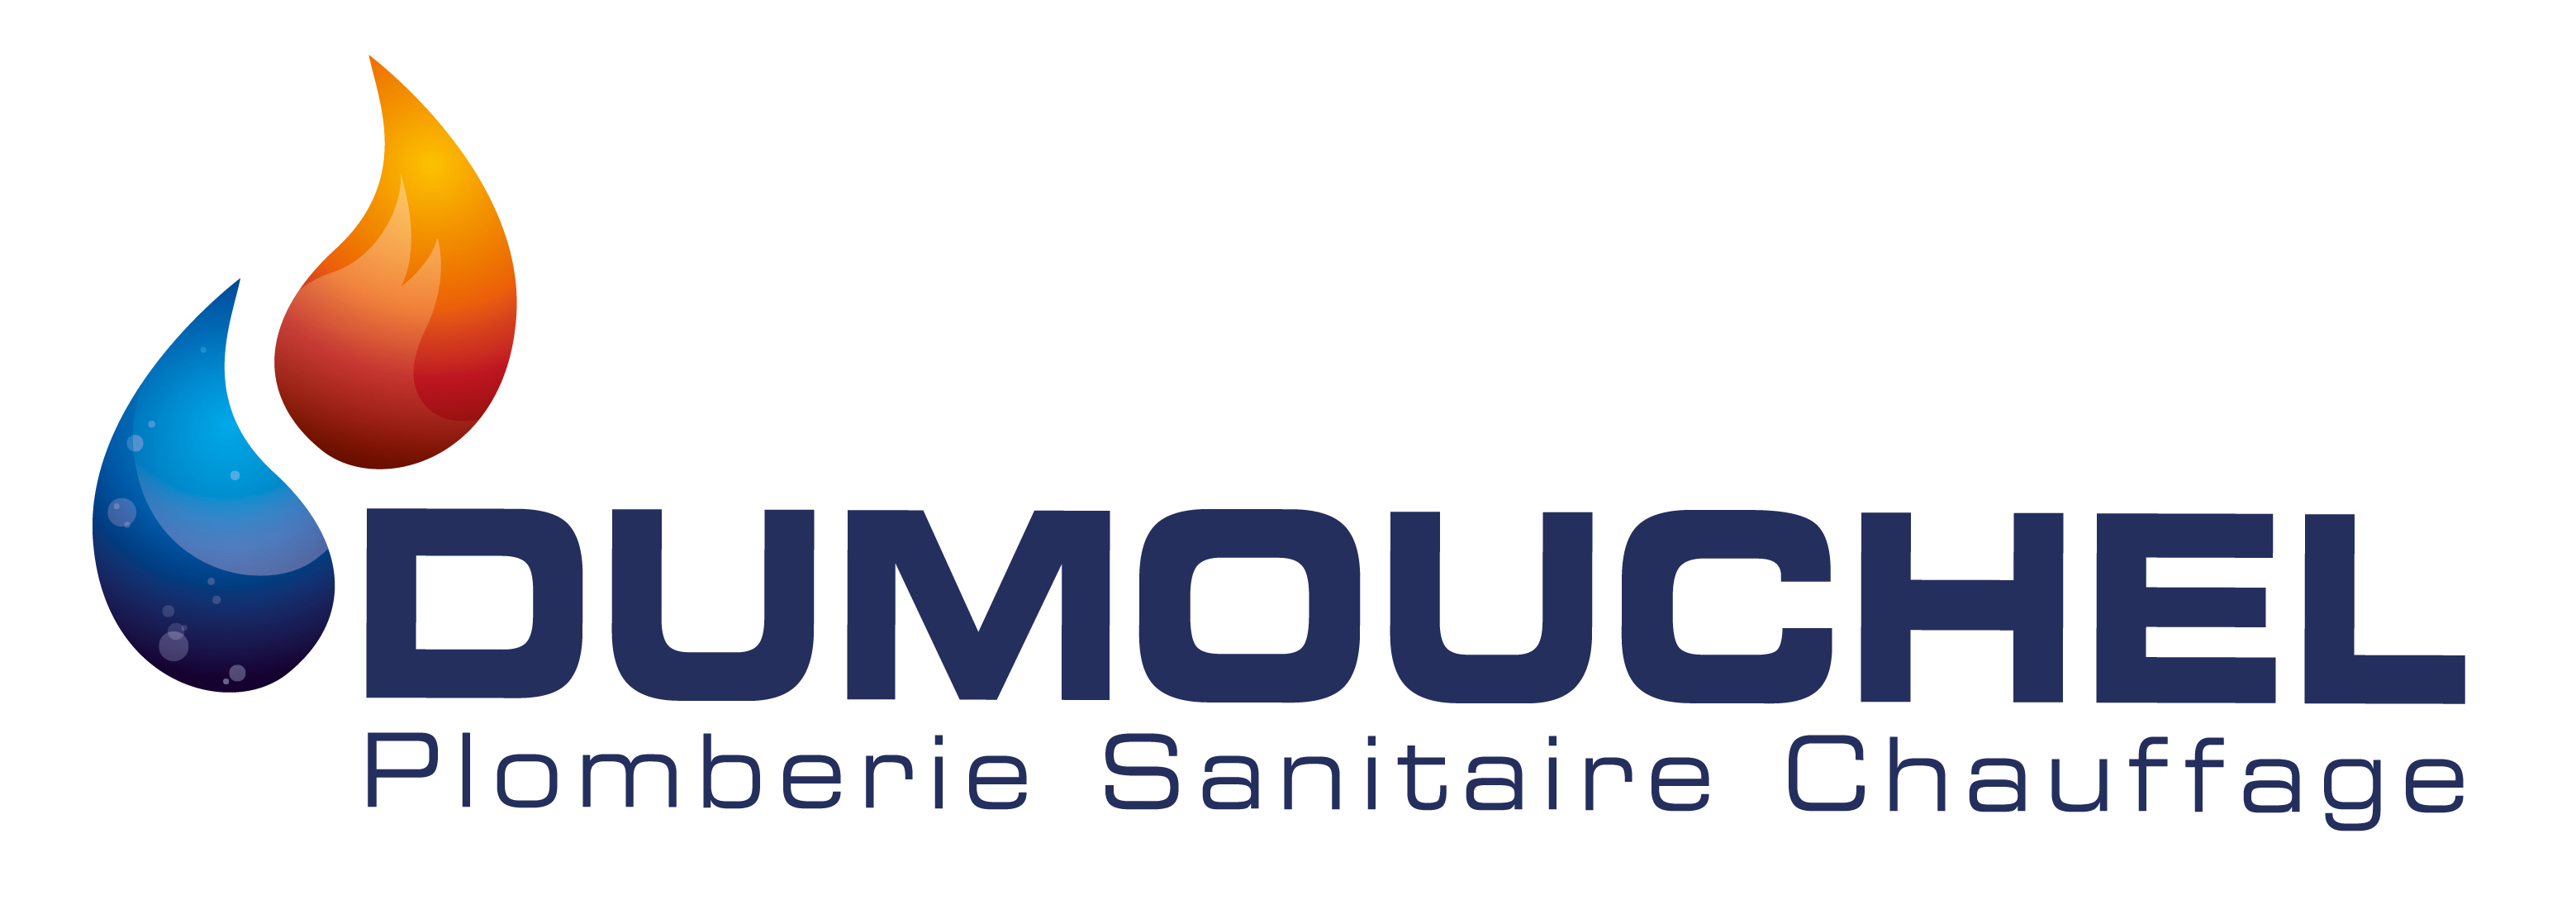 Dumouchel-logo.jpg